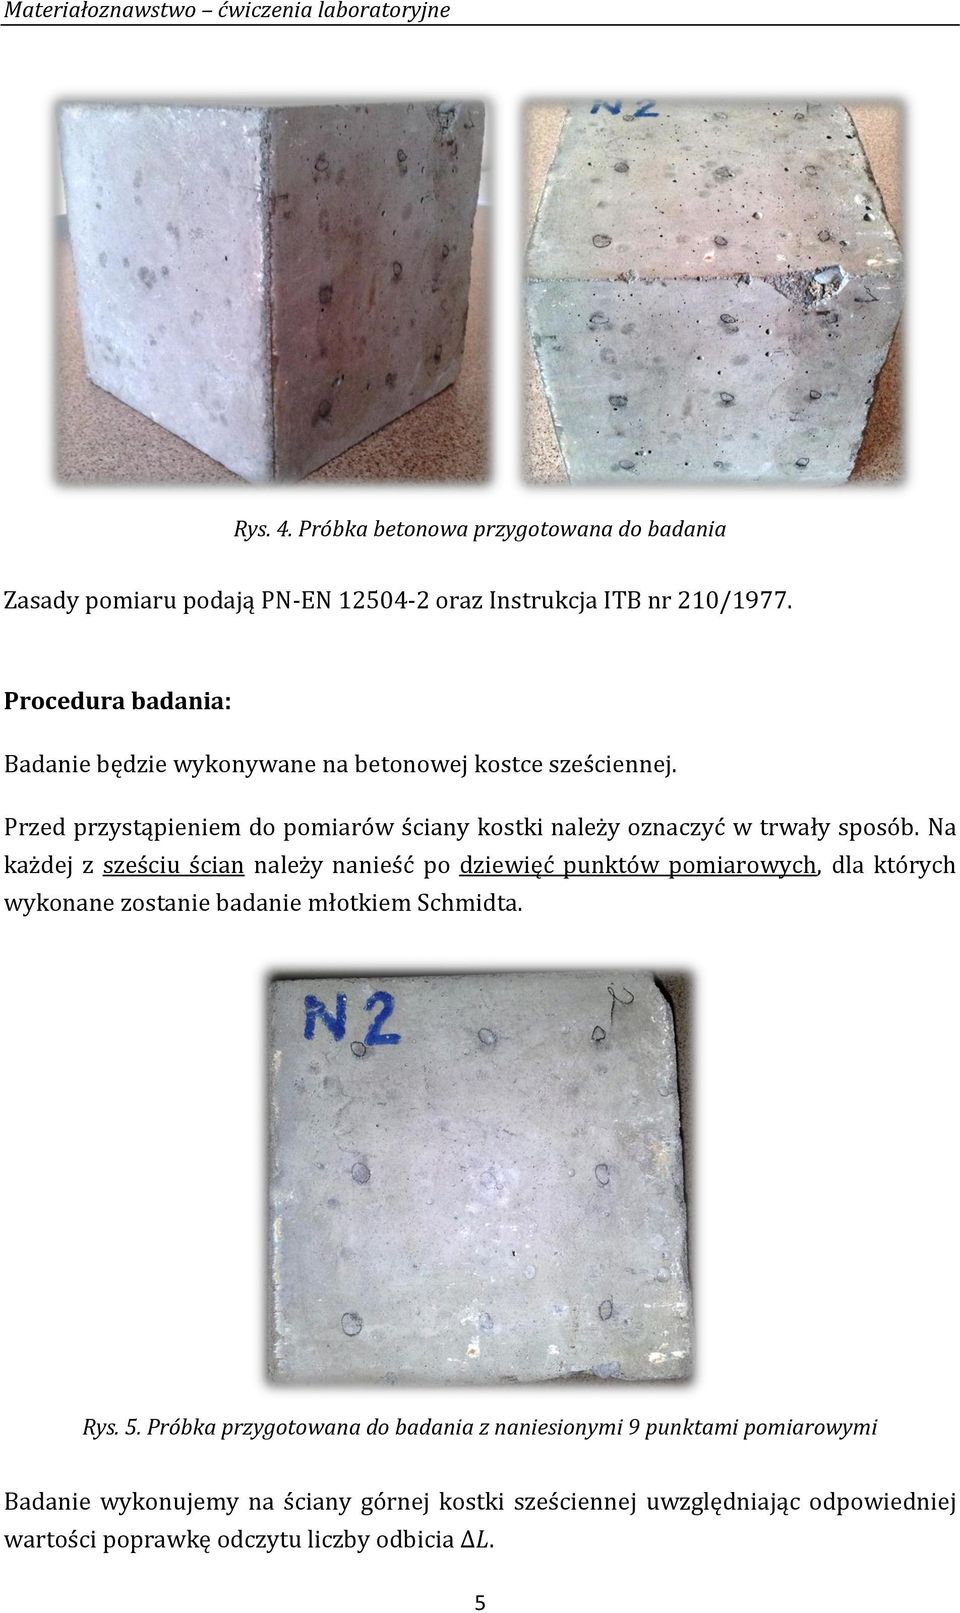 Badanie wytrzymałości elementu betonowego metodą sklerometryczną - PDF  Darmowe pobieranie